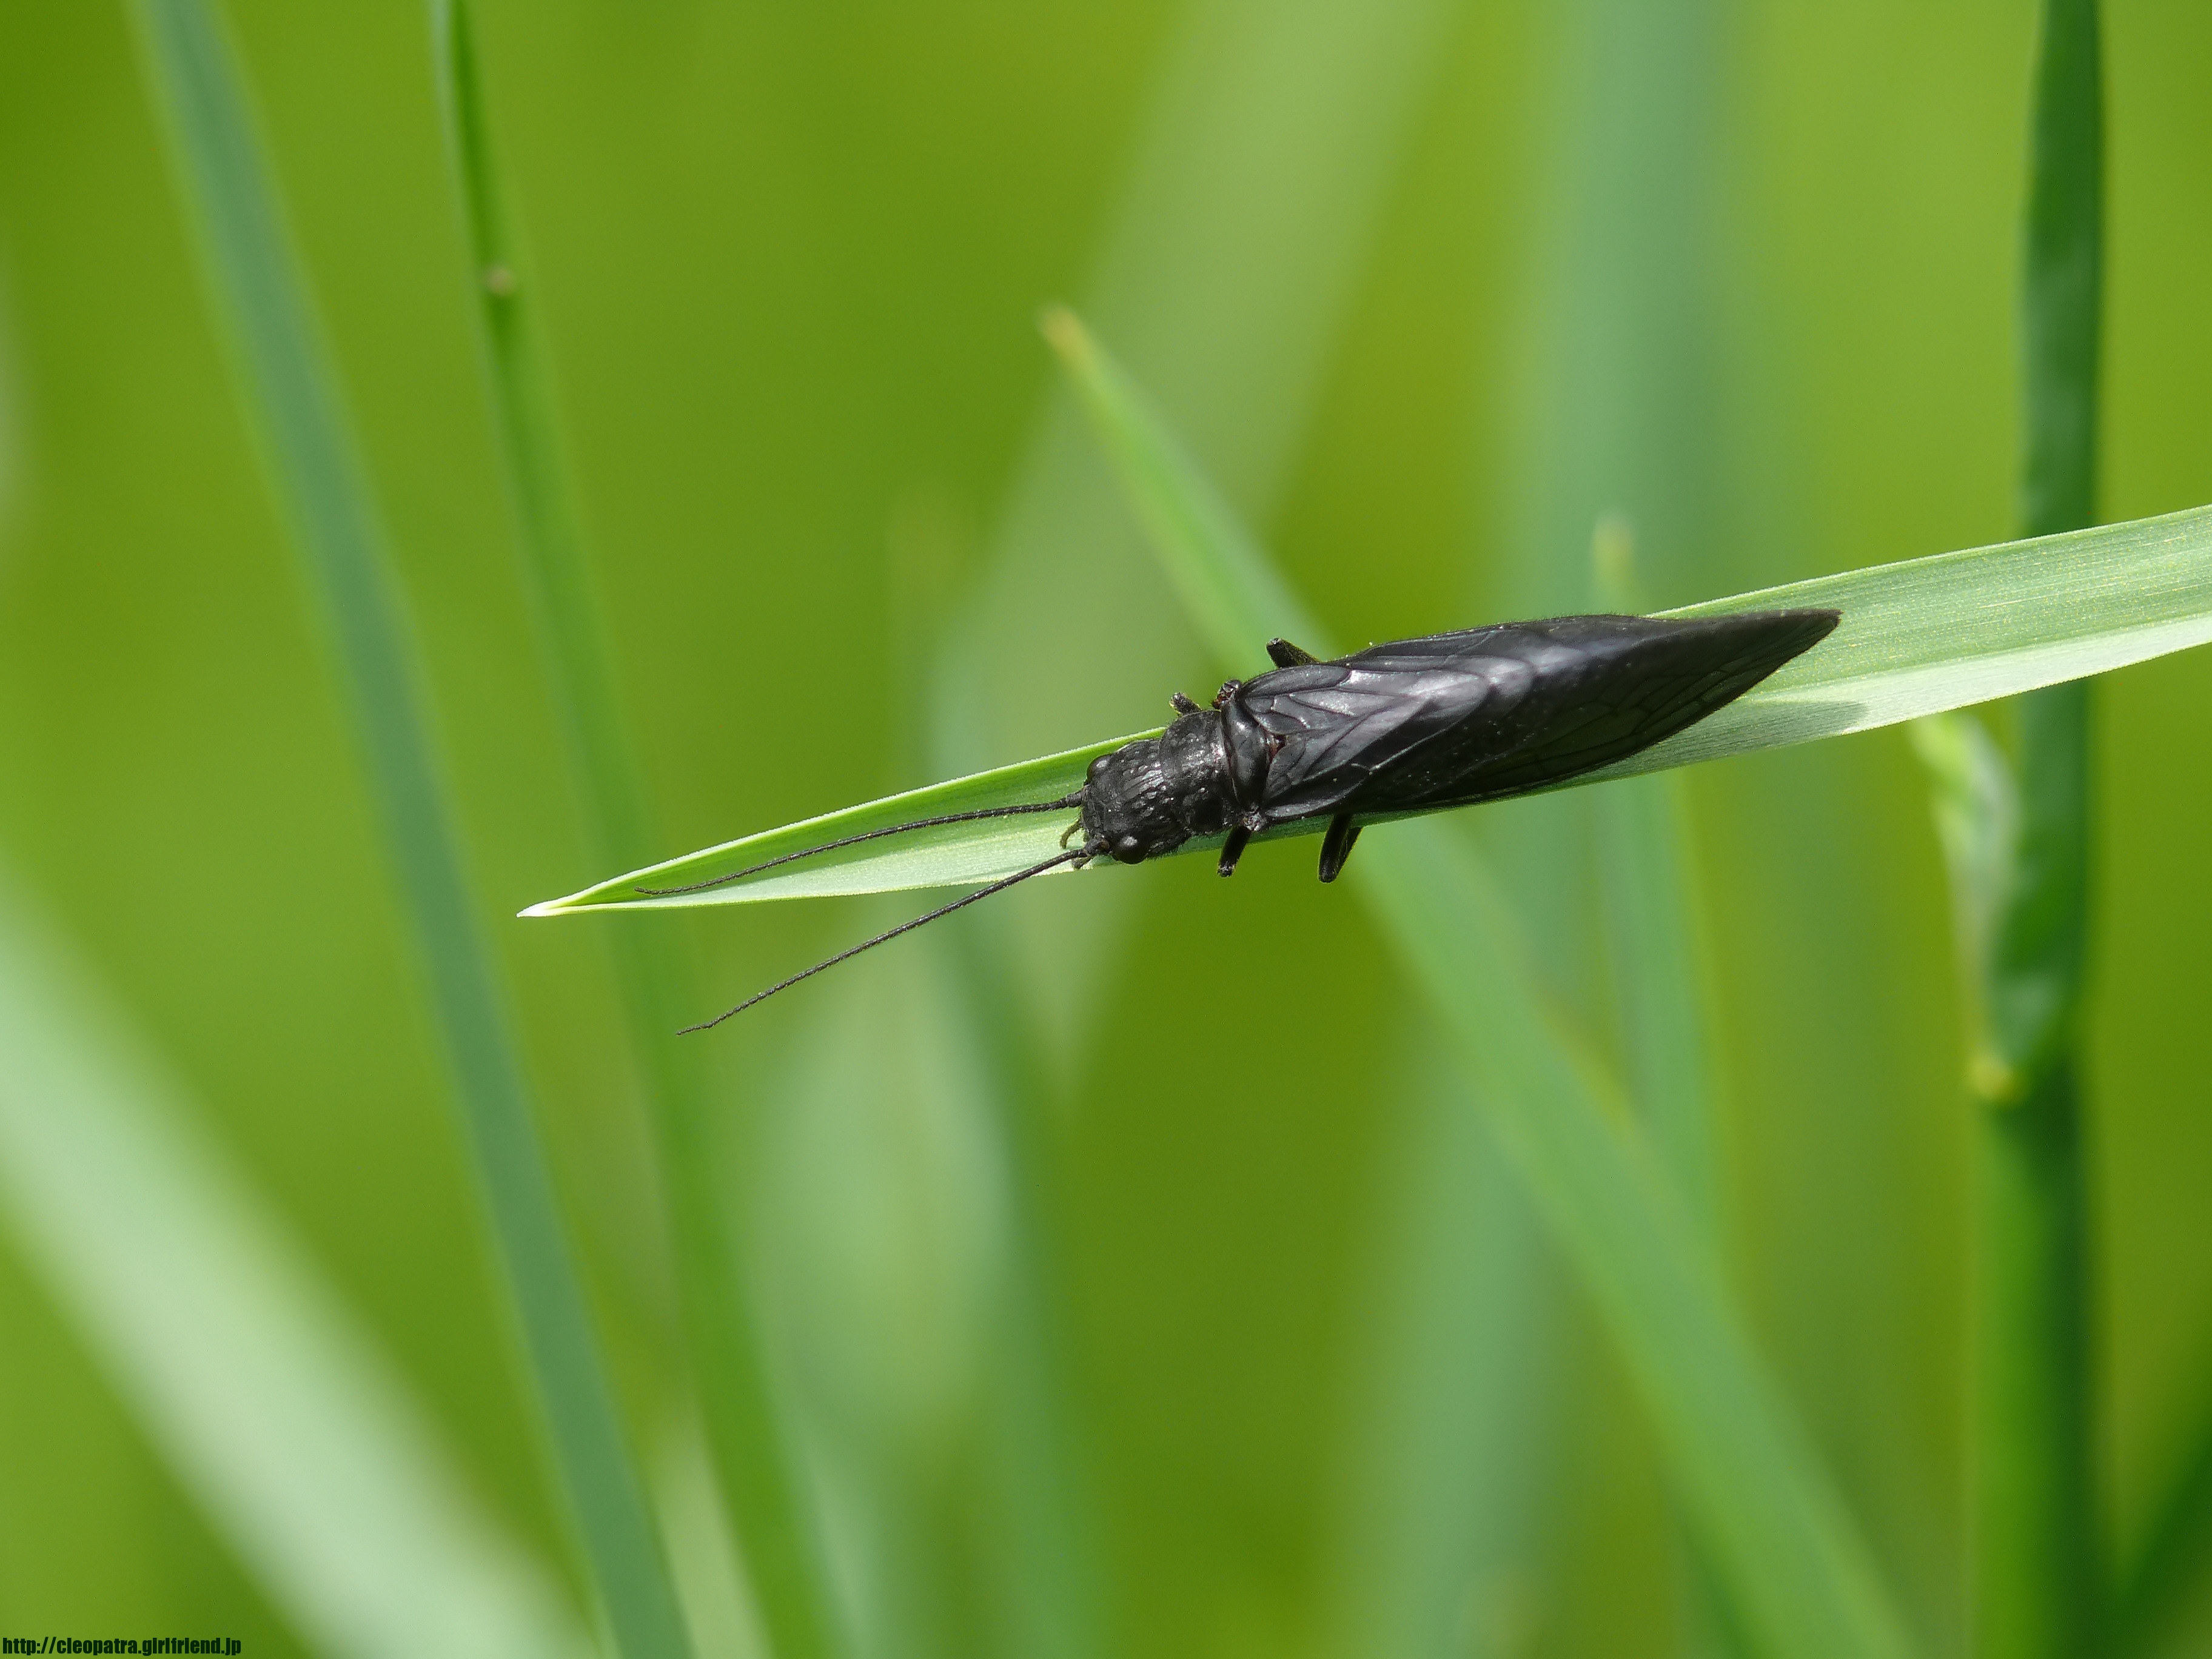 草の上で休憩中の黒いセンブリ